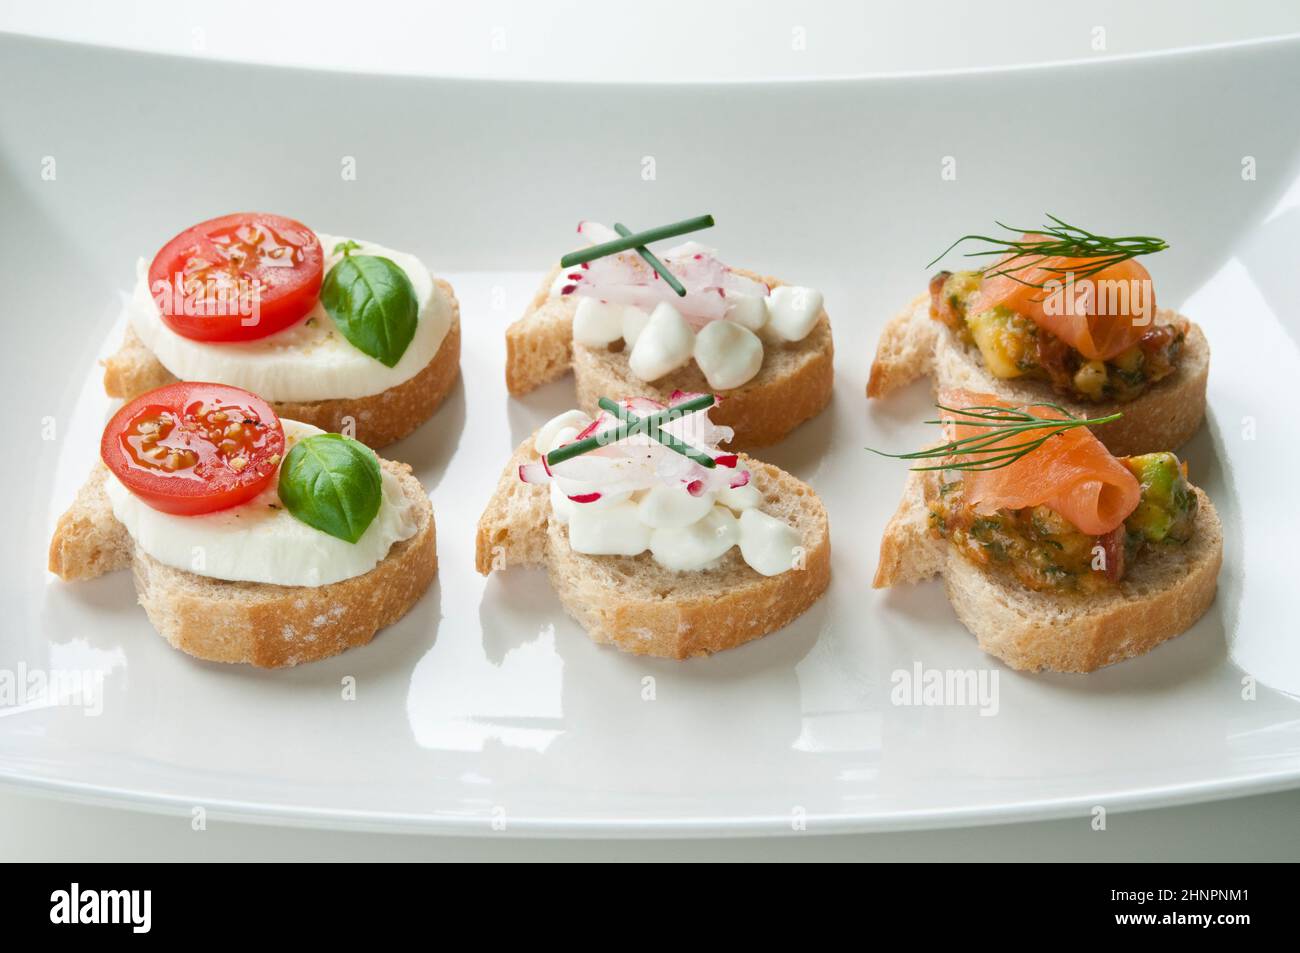 Sélection de plats végétariens apéritifs organisés sur plaque blanche Banque D'Images